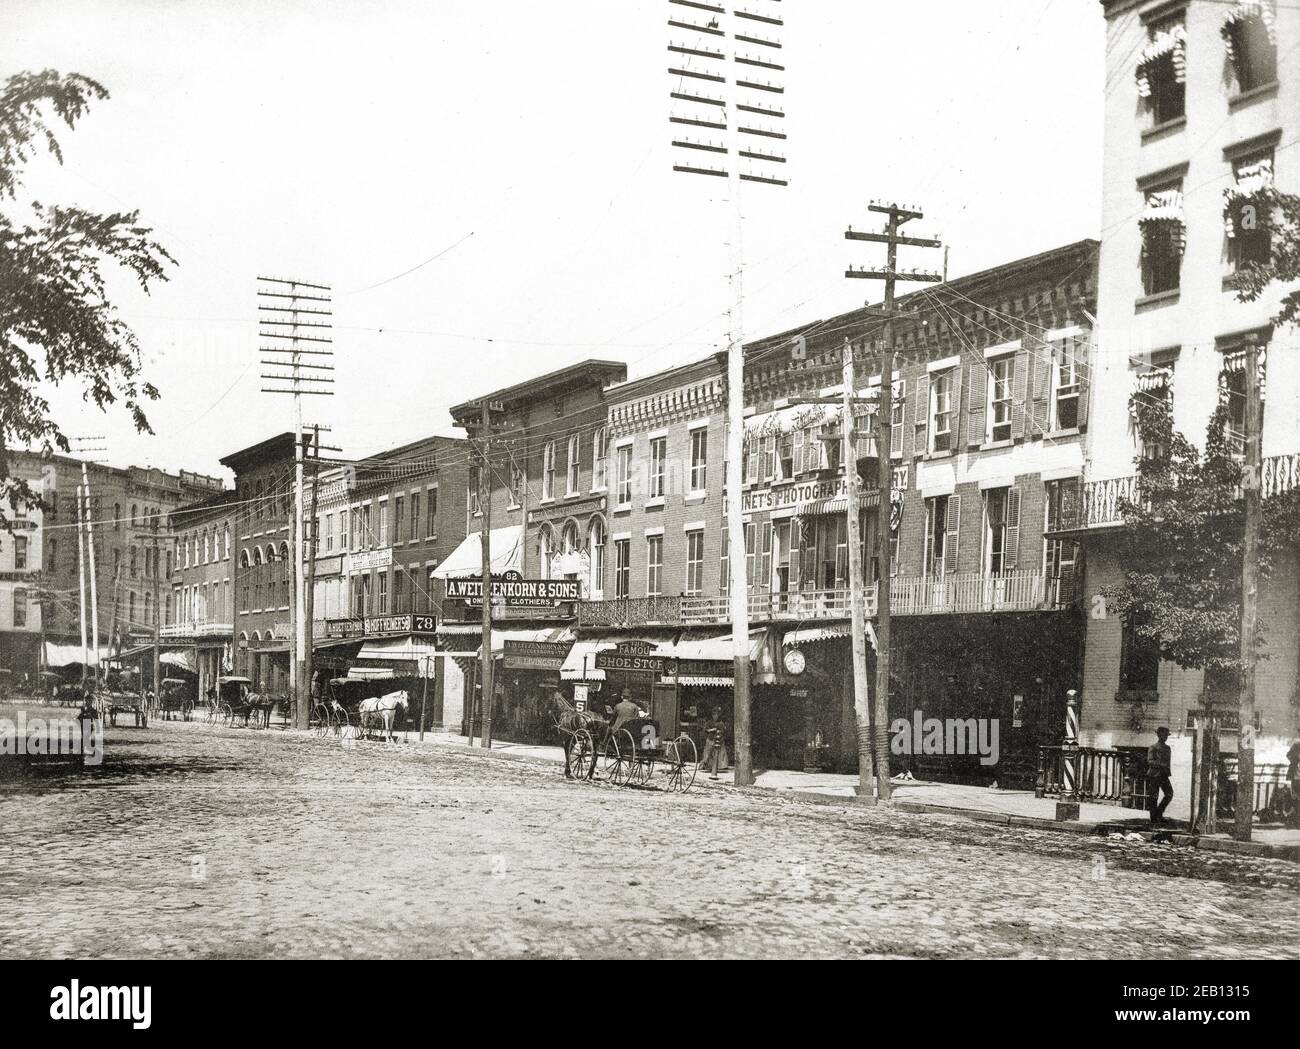 Le côté nord de public Square, Wilkes barre Pennsylvanie. 1891 Comté de Luzerne. Wyoming Valley, Pennsylvanie. Banque D'Images